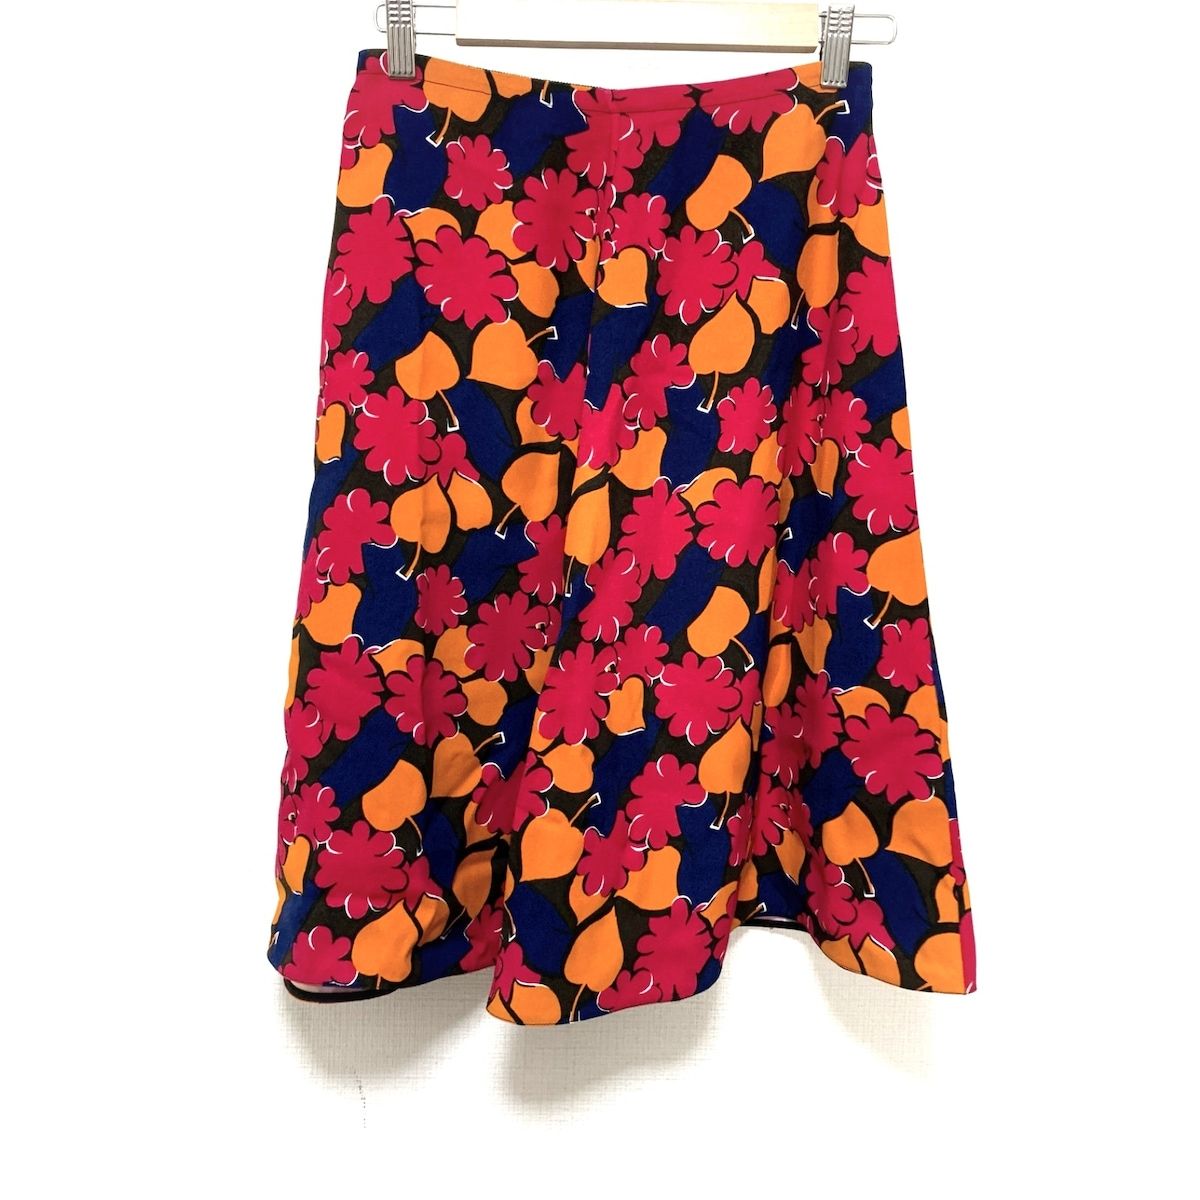 MARNI(マルニ) スカート サイズ36 S レディース美品 - レッド×オレンジ